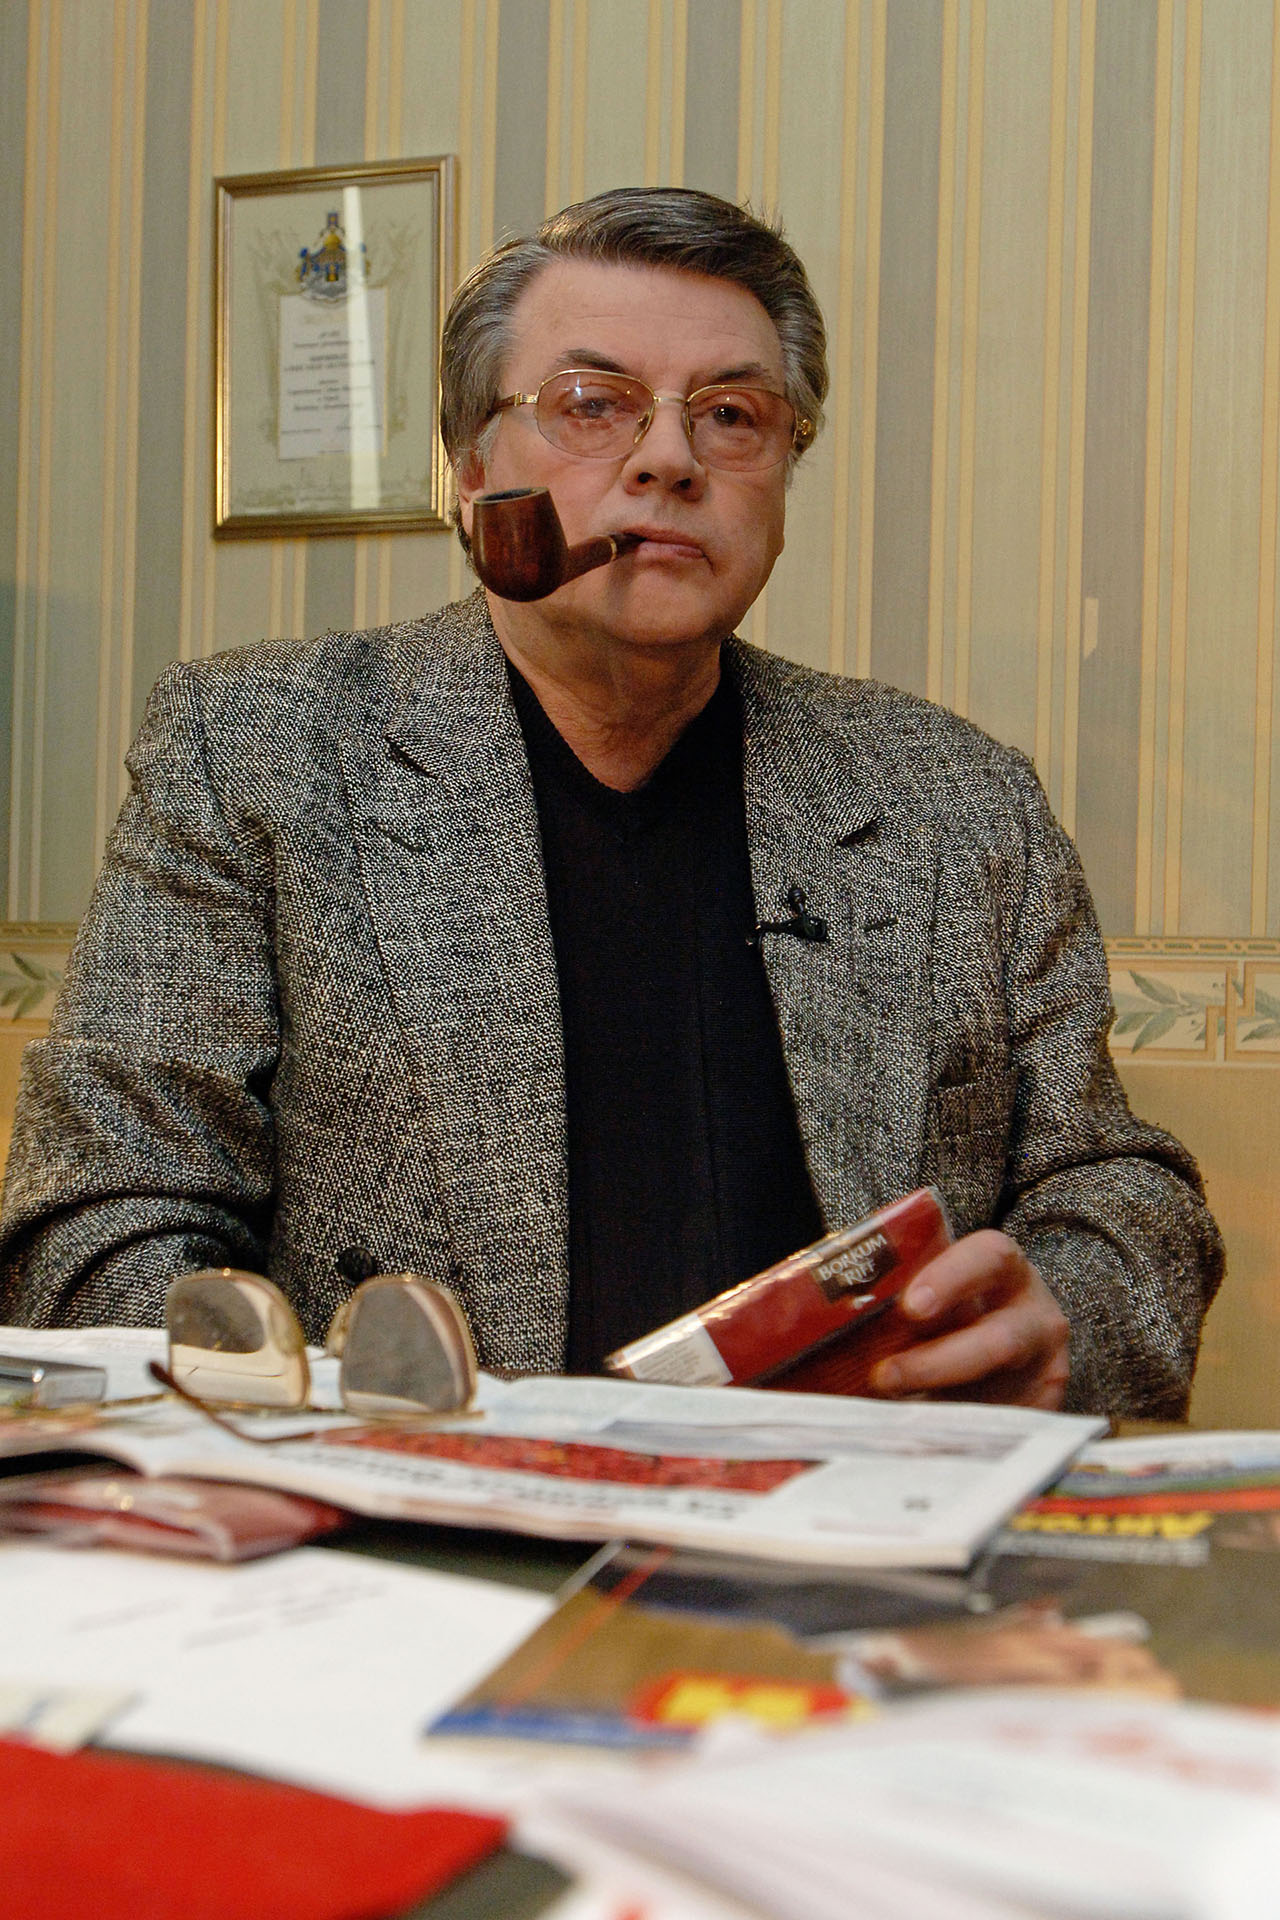 Художественный руководитель театра Сатиры Александр Ширвиндт в своем рабочем кабинете, 30 марта 2007 года